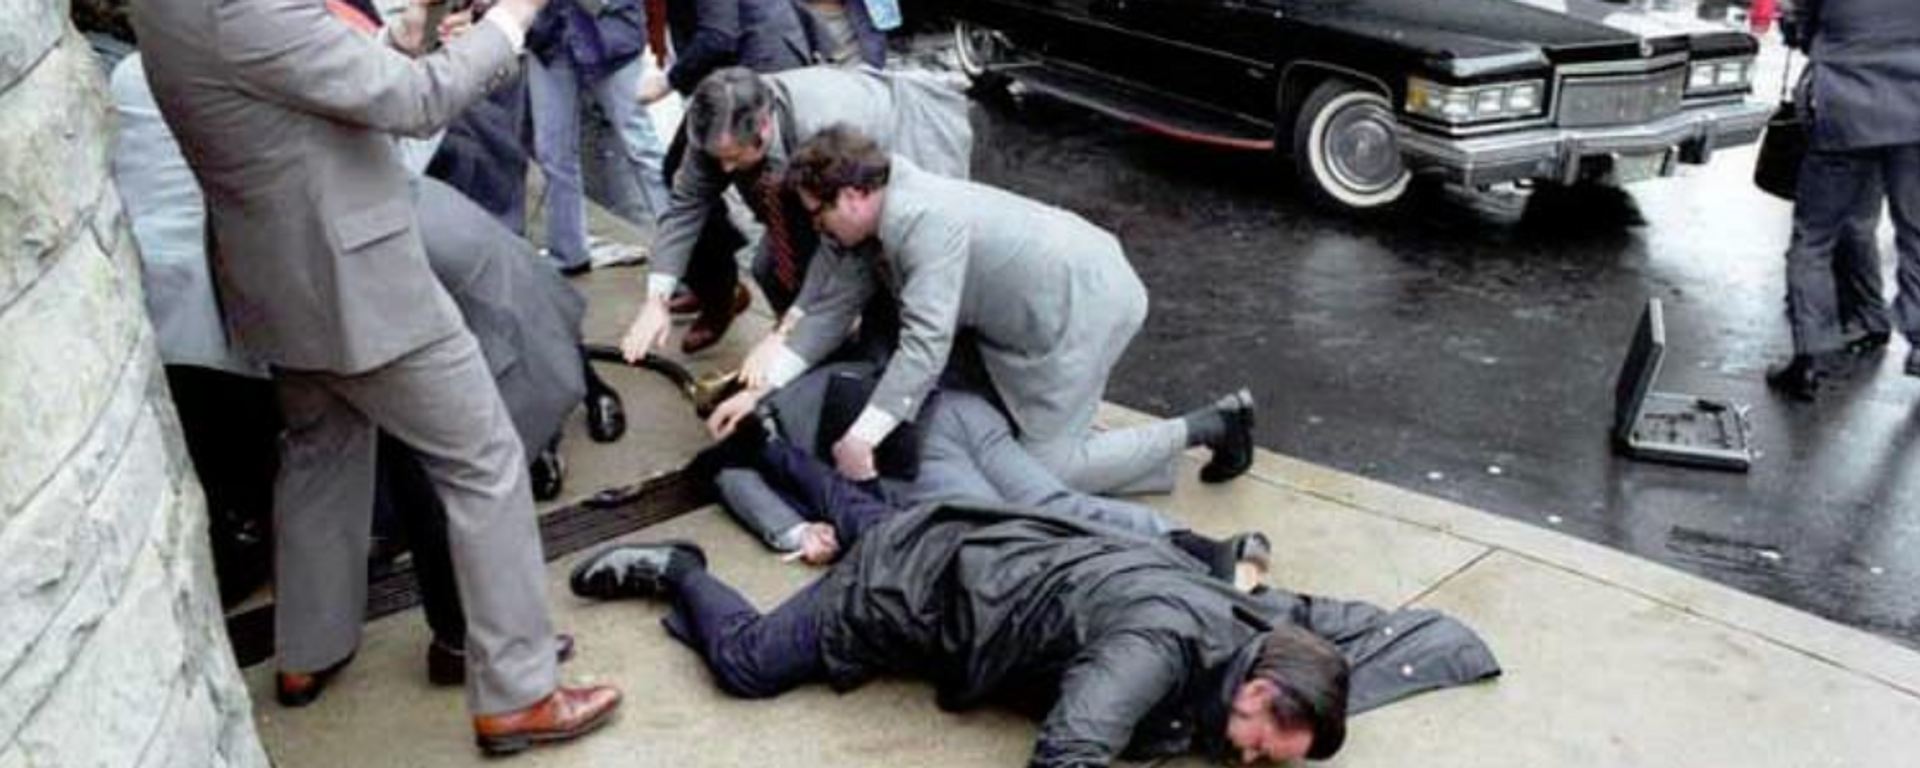 El atentado contra Ronald Reagan, el 30 de marzo de 1981 - Sputnik Mundo, 1920, 27.09.2021